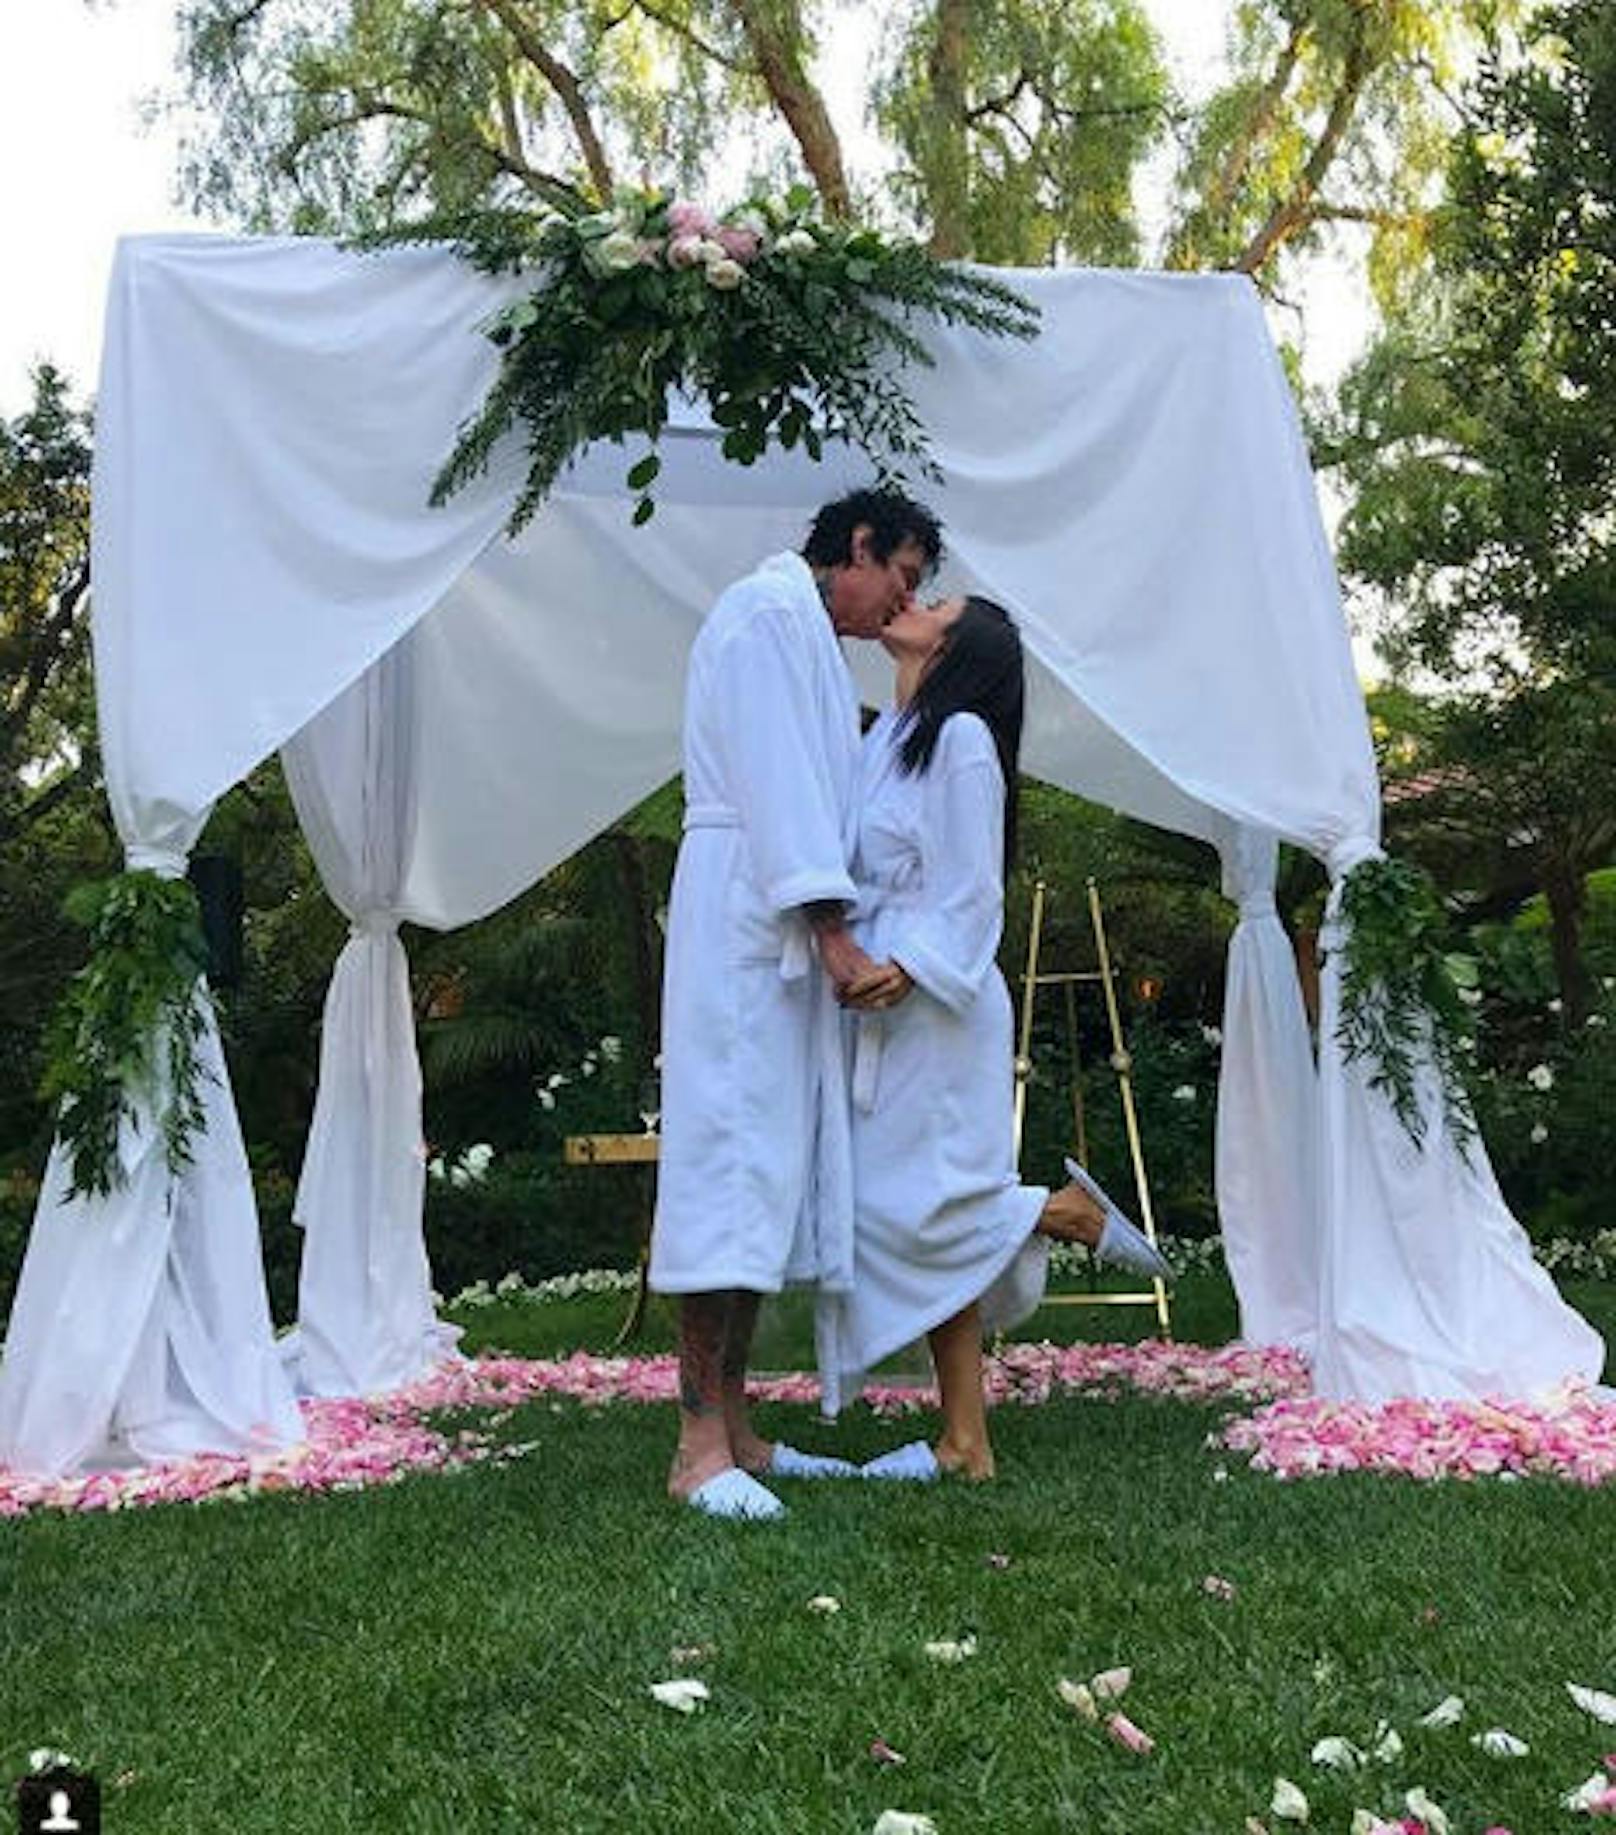 27.05.2018: Tommy Lee und seine Verlobte Brittany Furlan halten die Welt zum Narren: Mit diesem Fotos auf Instagram machen sie jeden glauben, dass sie im Bademantel geheiratet hätten. Die "Braut" klärt später auf: Alles Fake!